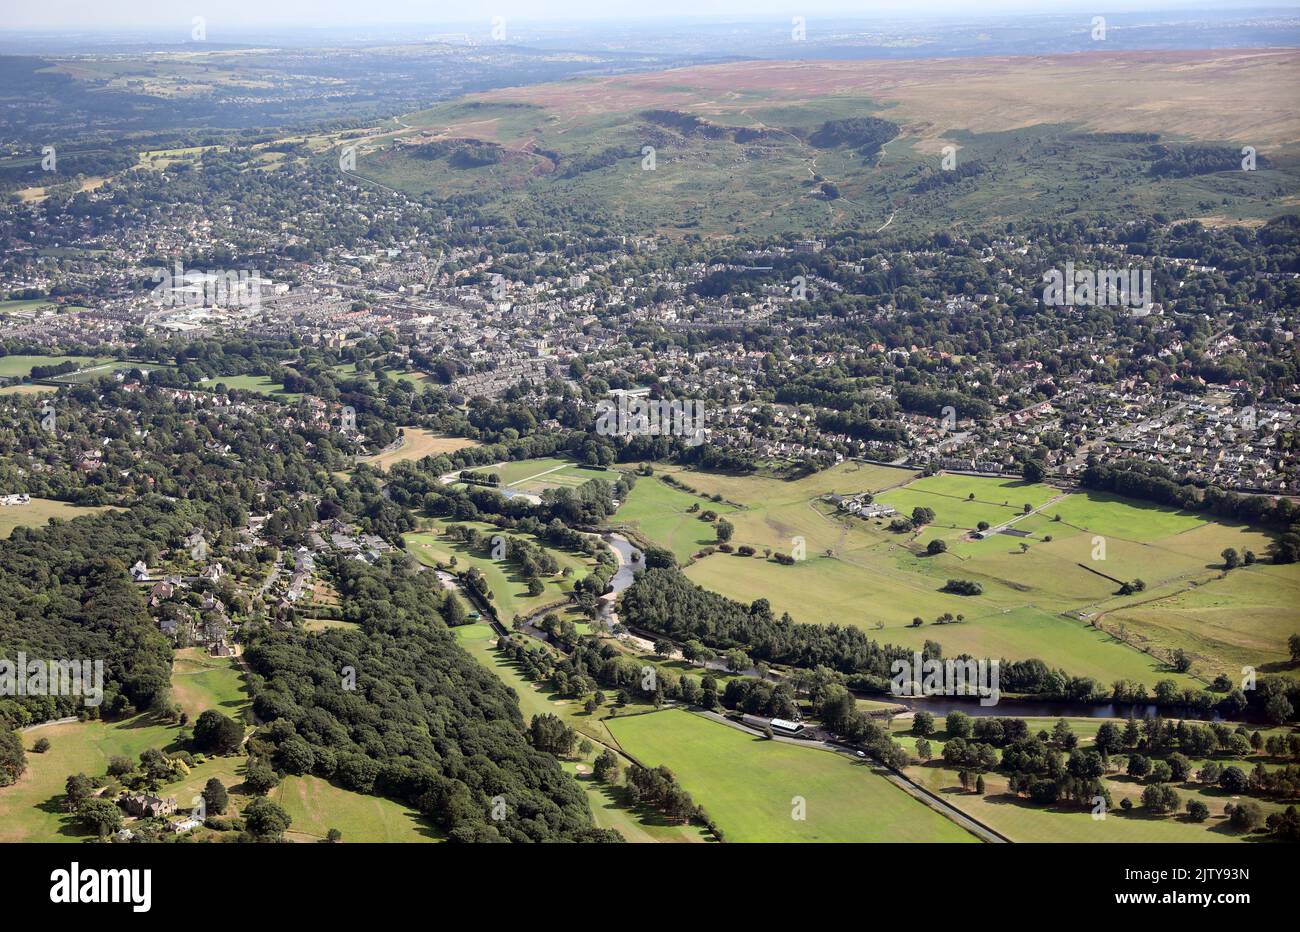 Vue aérienne de la ville du Yorkshire d'Ilkley, avec la rivière Wharfe en premier plan, le centre-ville puis Ilkley Moor dans le backgorund Banque D'Images